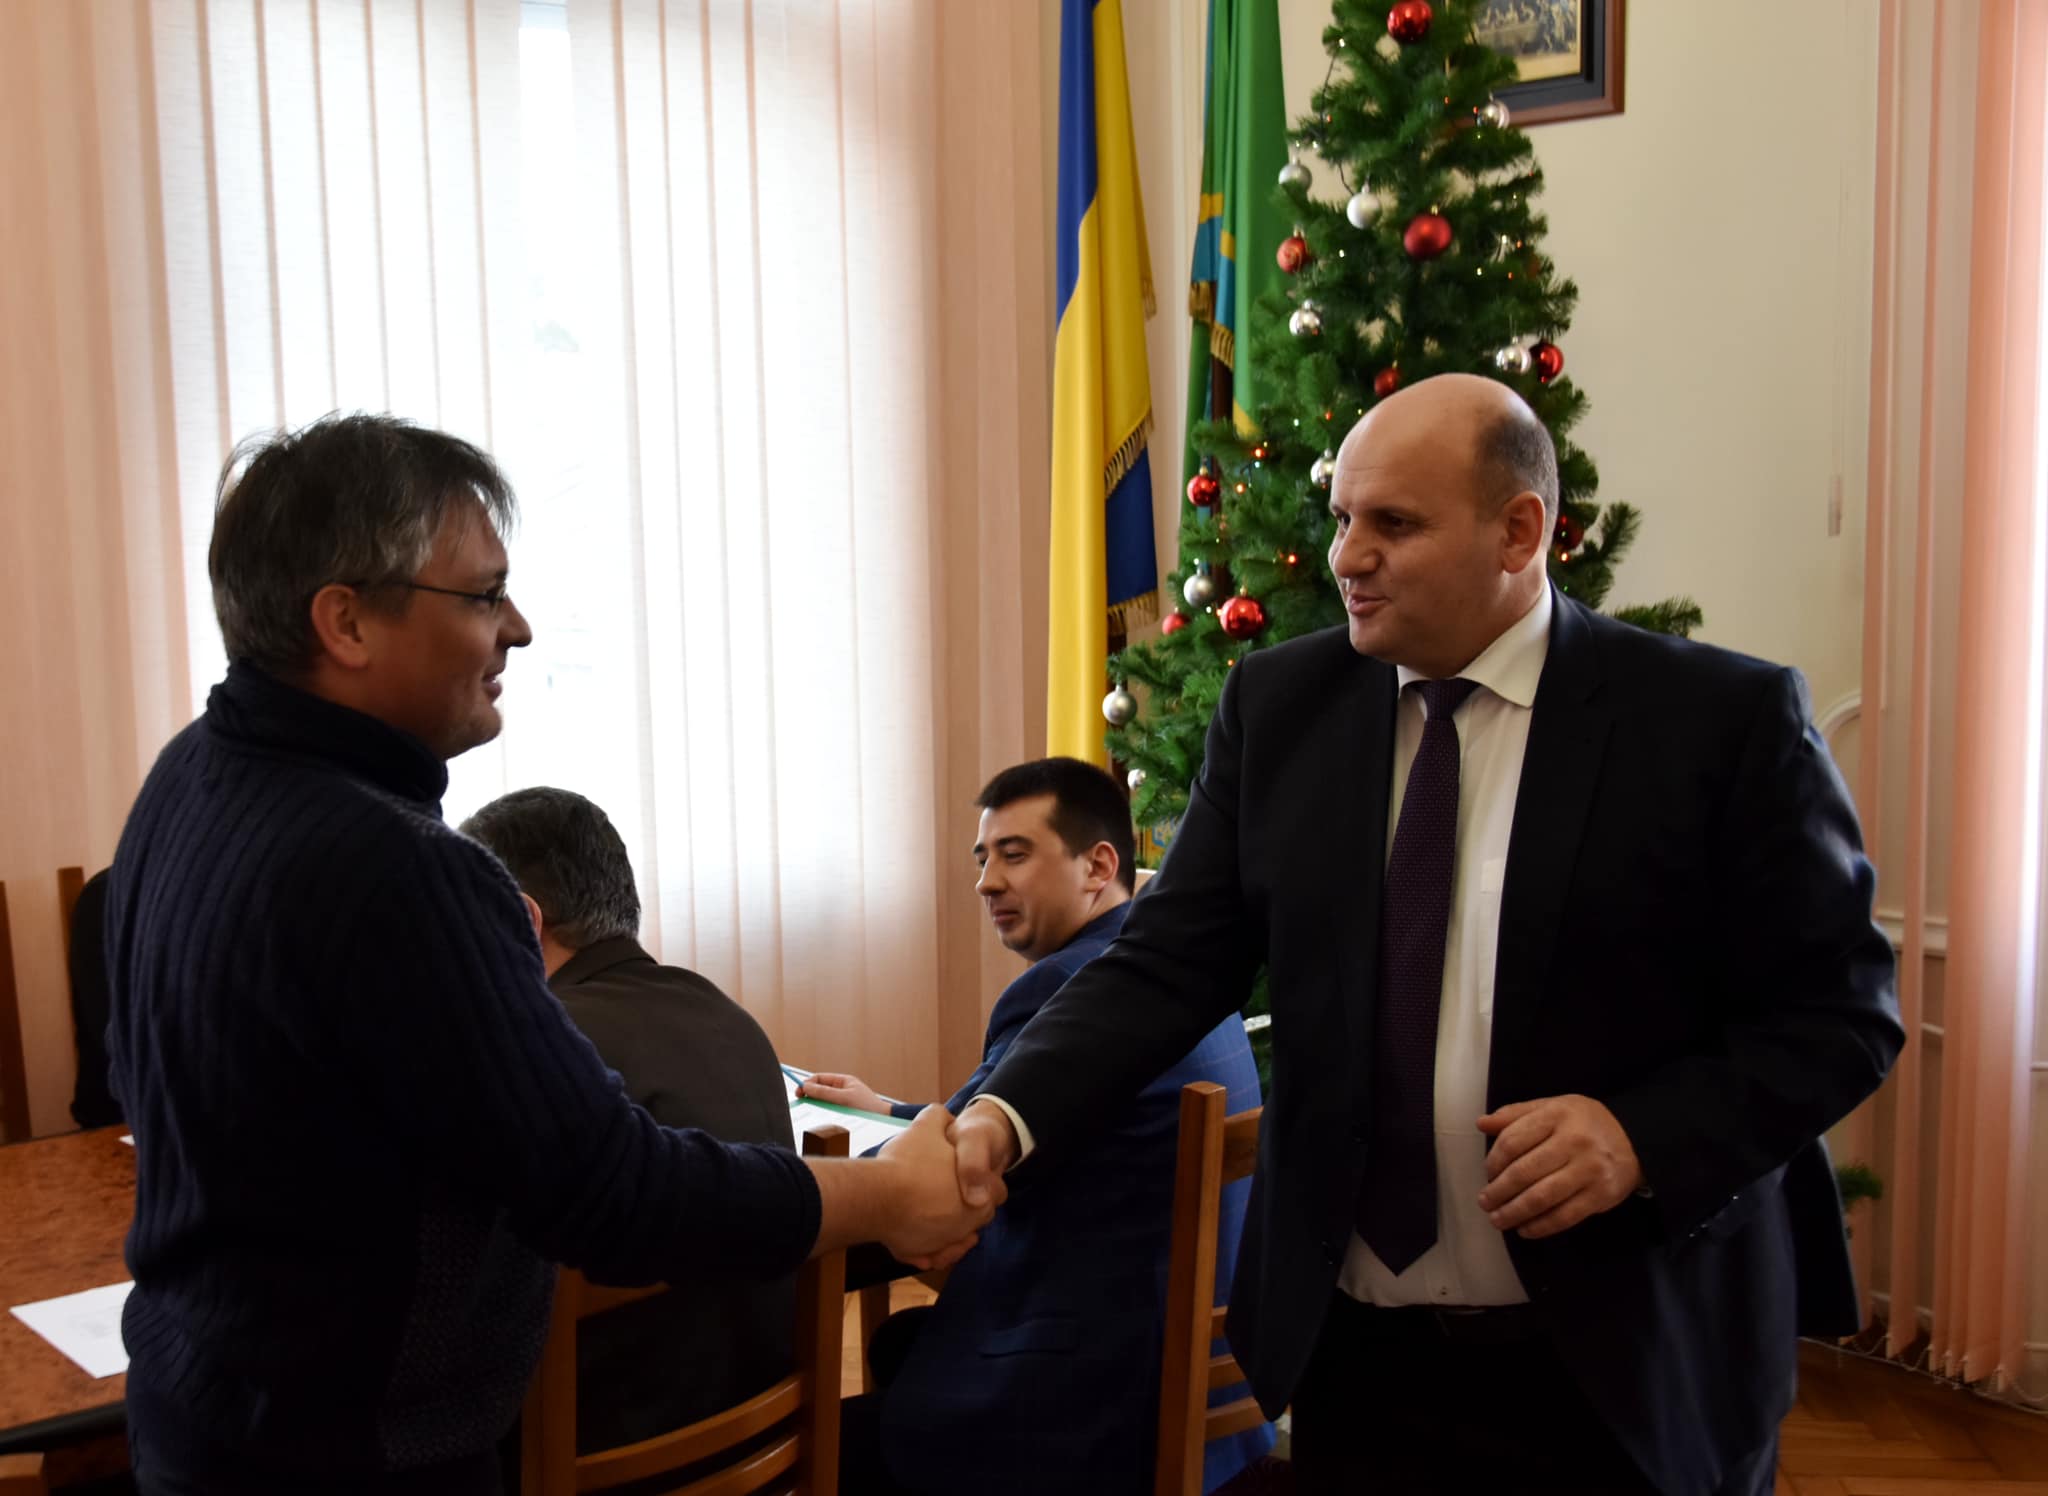 Іван Мунтян призначив Олексія Грушка директором «Агенції регіонального розвитку»